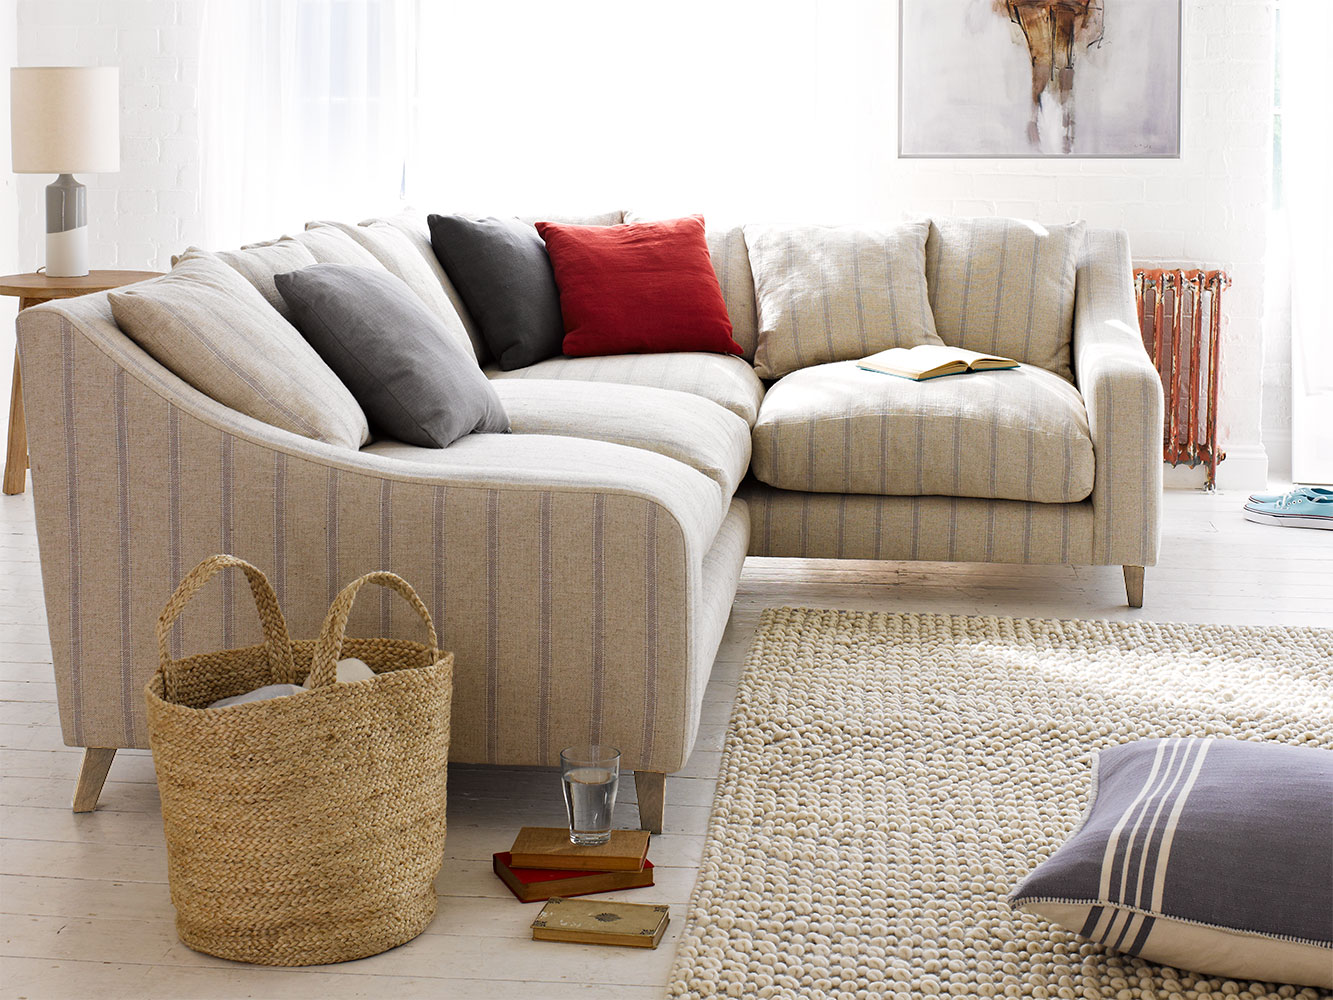 Mengenal 10 Bahan  Sofa  Bed yang Paling Nyaman